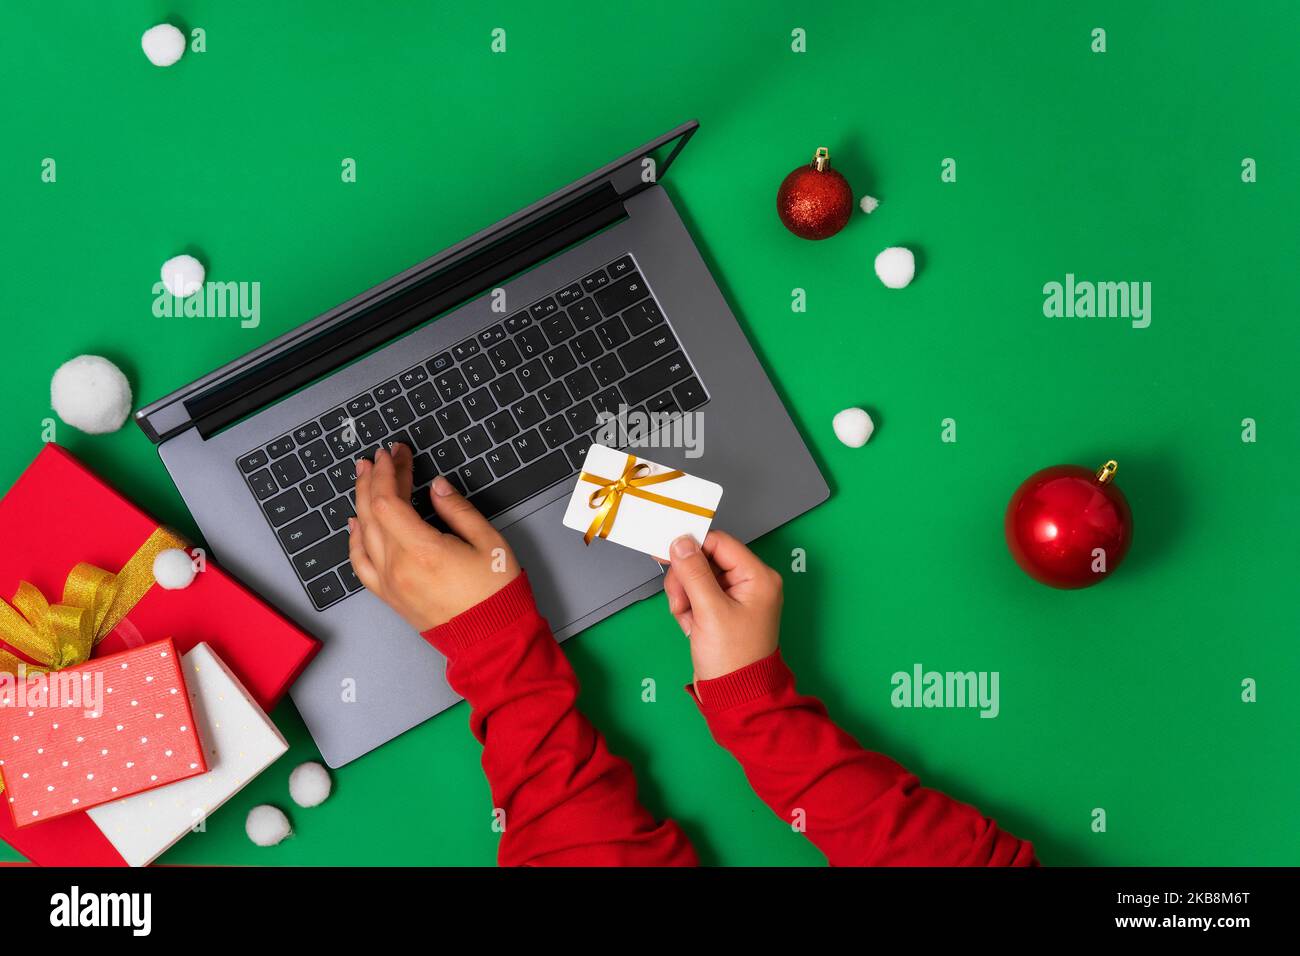 Vue de dessus de l'ordinateur portable et les mains de femme entrant les détails de carte pour le paiement, fond vert décor de Noël. Fond plat pour la promotion de Christm Banque D'Images